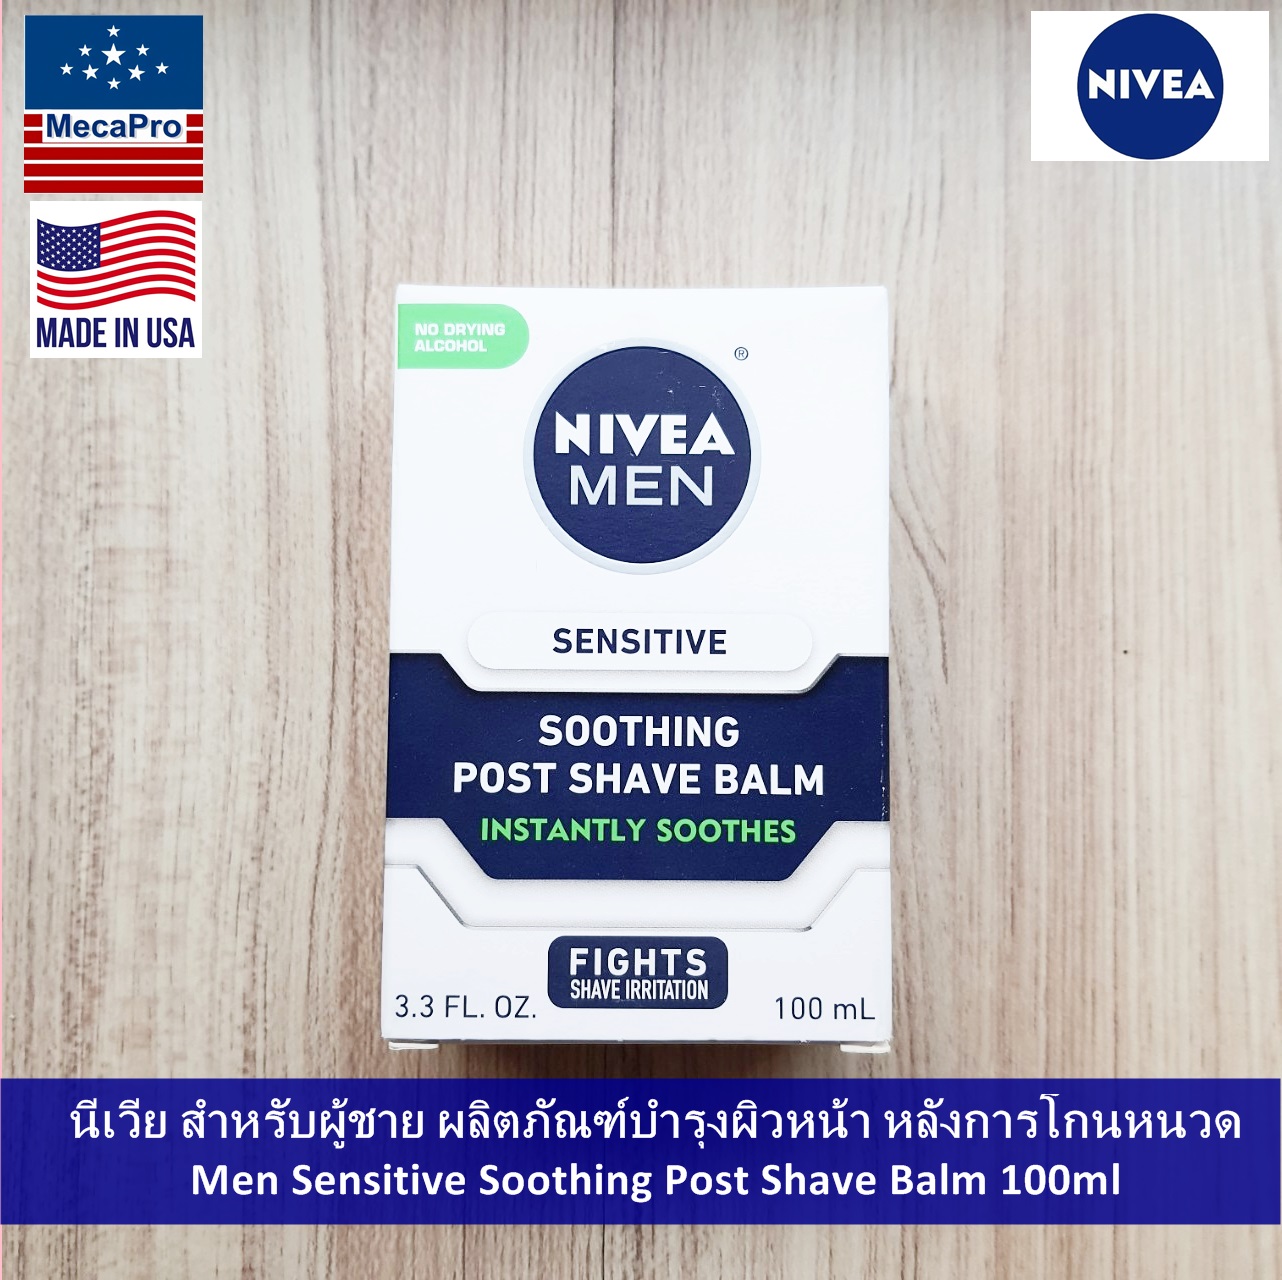 Nivea® นีเวีย สำหรับผู้ชาย ผลิตภัณฑ์บำรุงผิวหน้า หลังการโกนหนวด Men Sensitive Soothing Post Shave Balm 100 mL